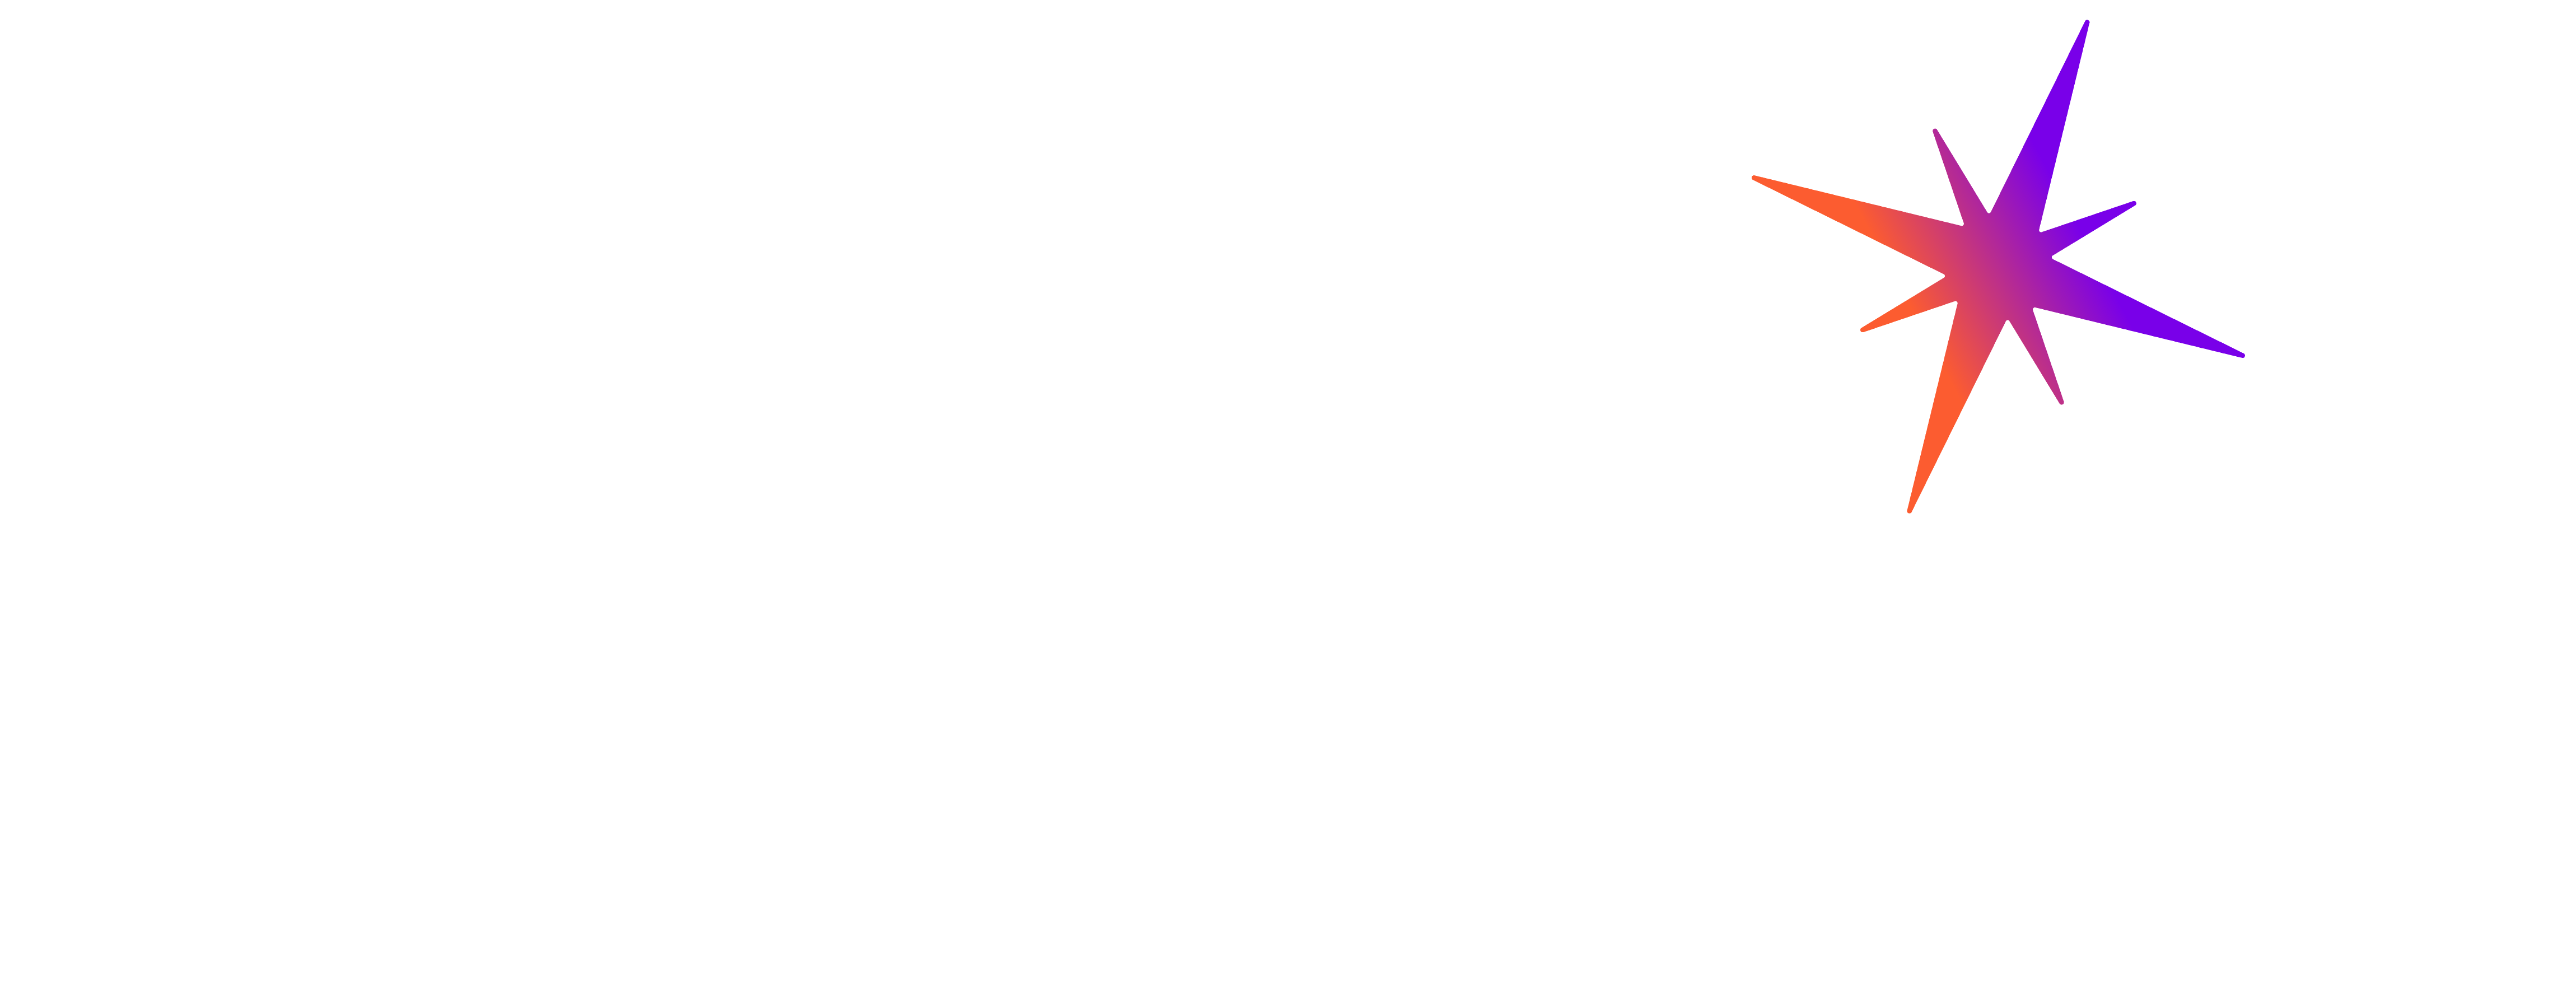 Superfutur